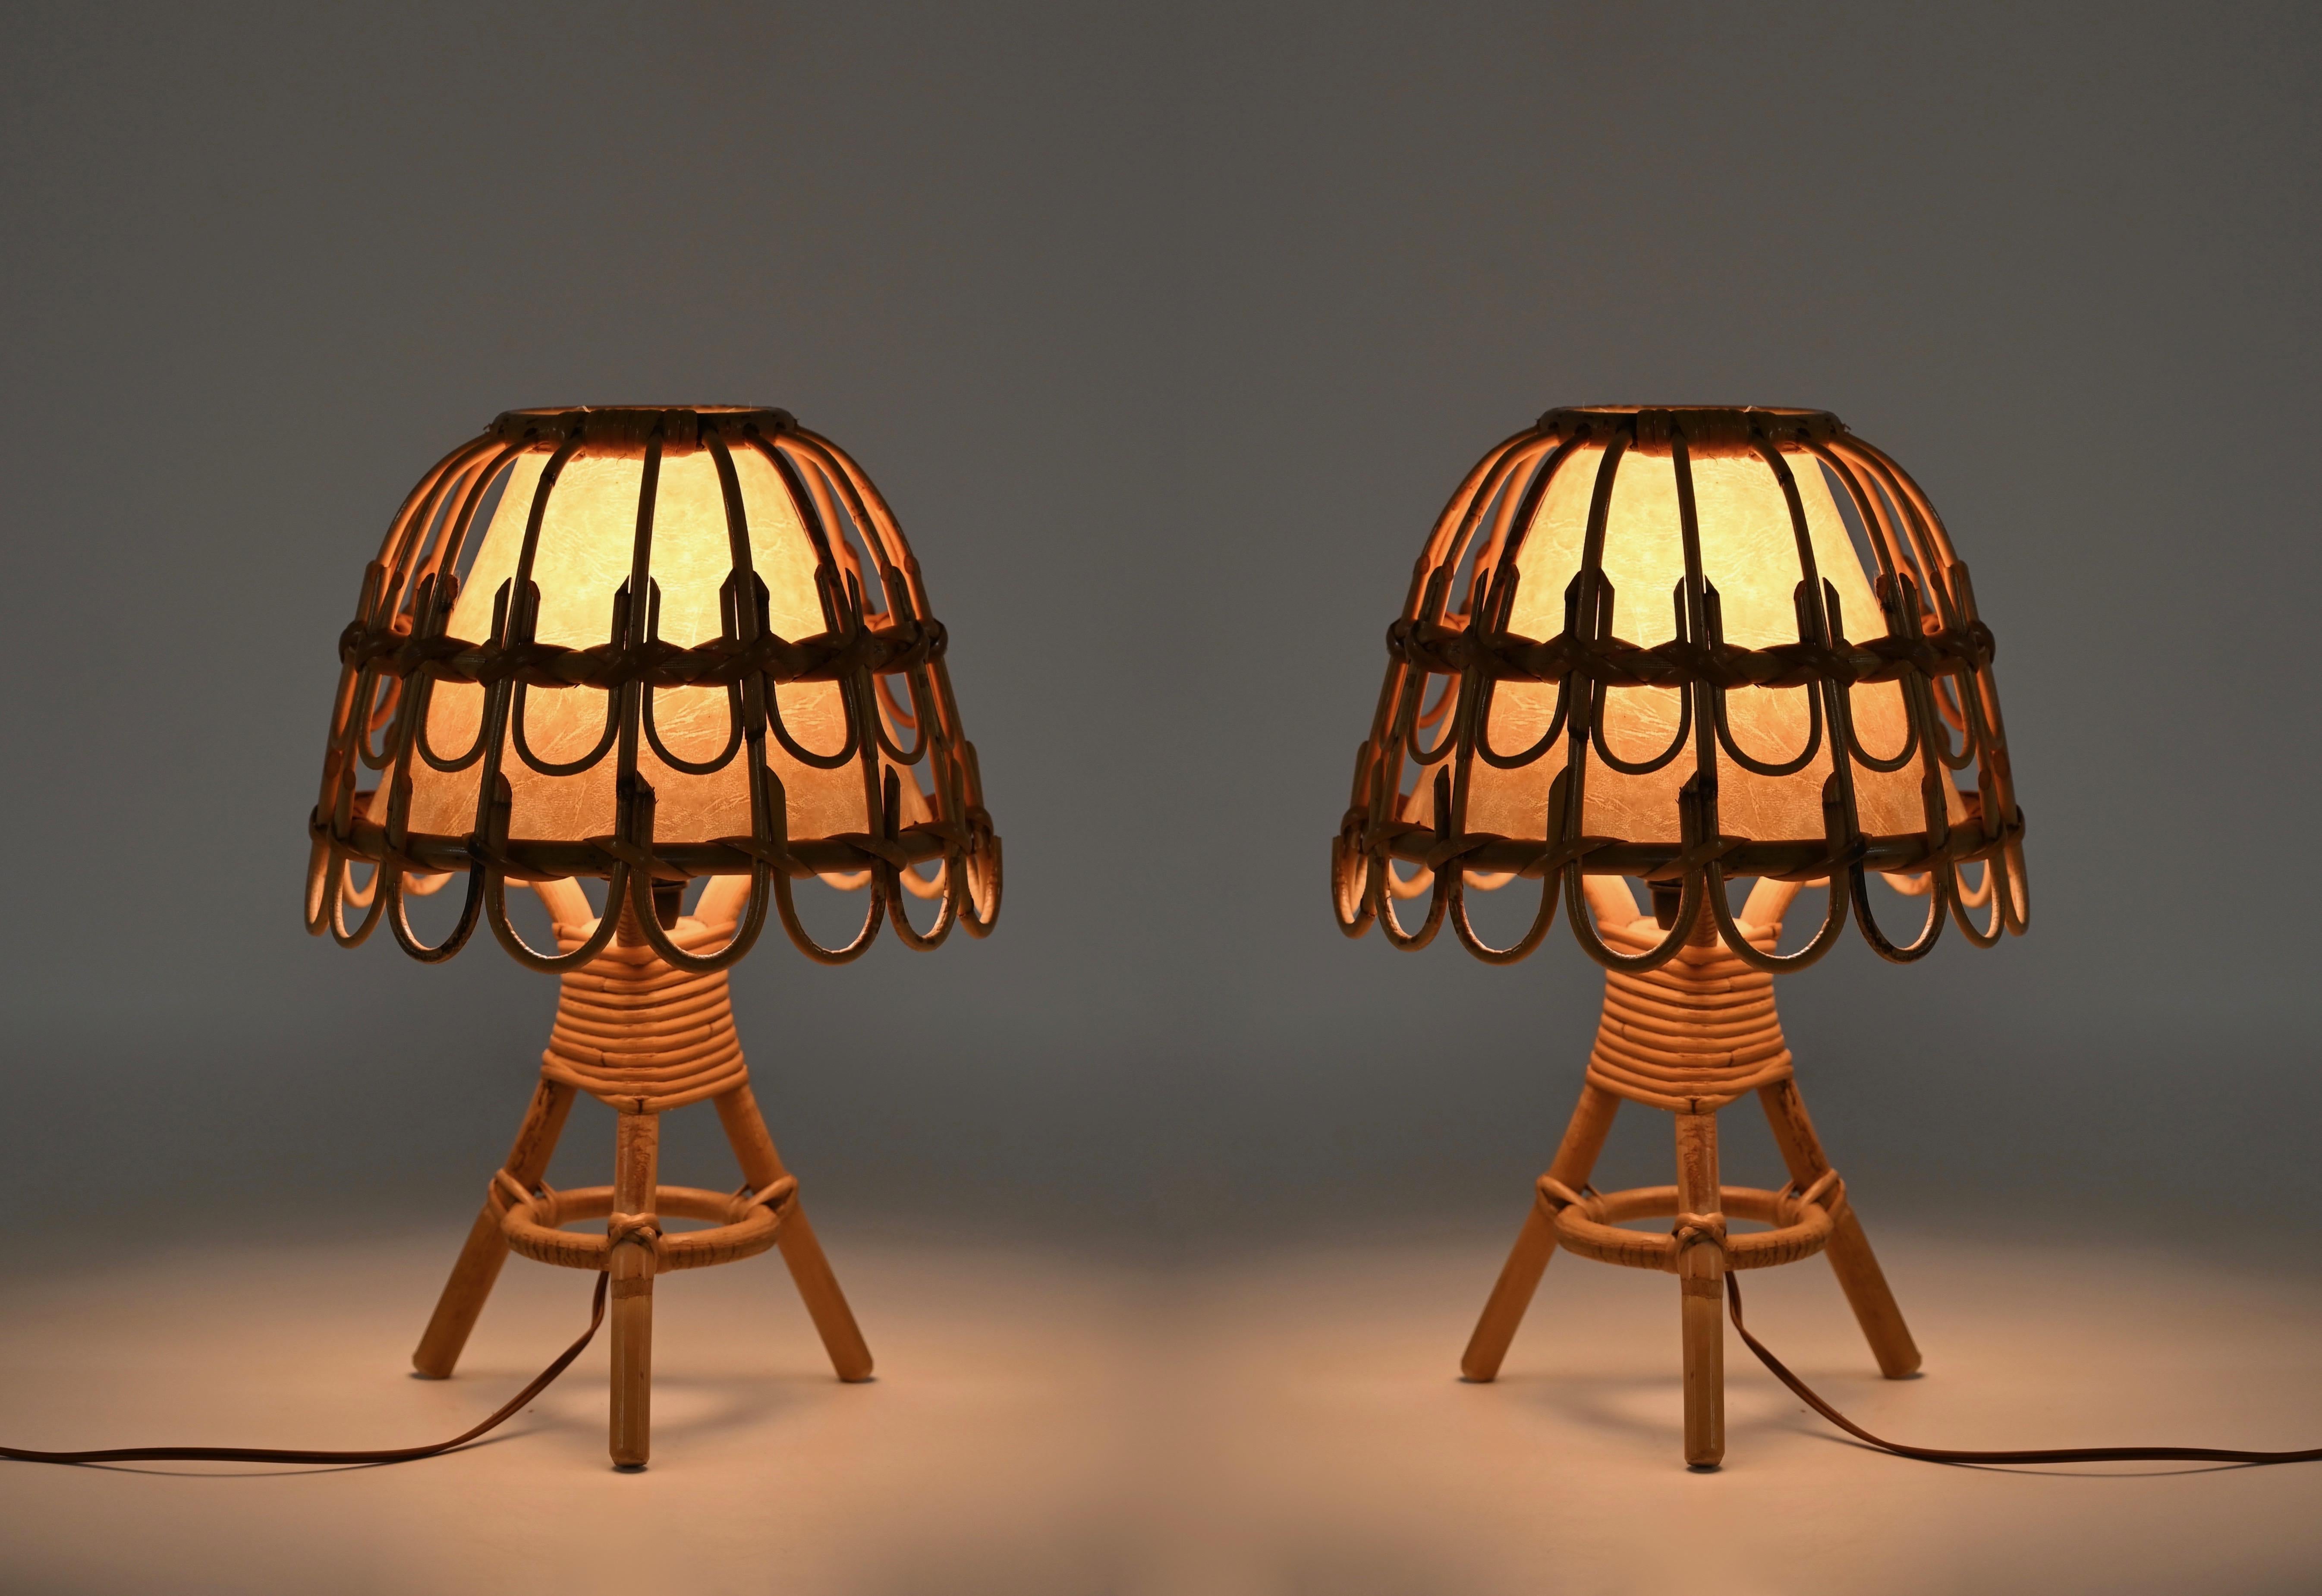 Magnifique paire de lampes de table de style Riviera française du milieu du siècle, fabriquées en rotin courbé et en osier tressé à la main. Ces lampes fantastiques ont été fabriquées en France dans les années 1960 et sont attribuées à la maîtrise